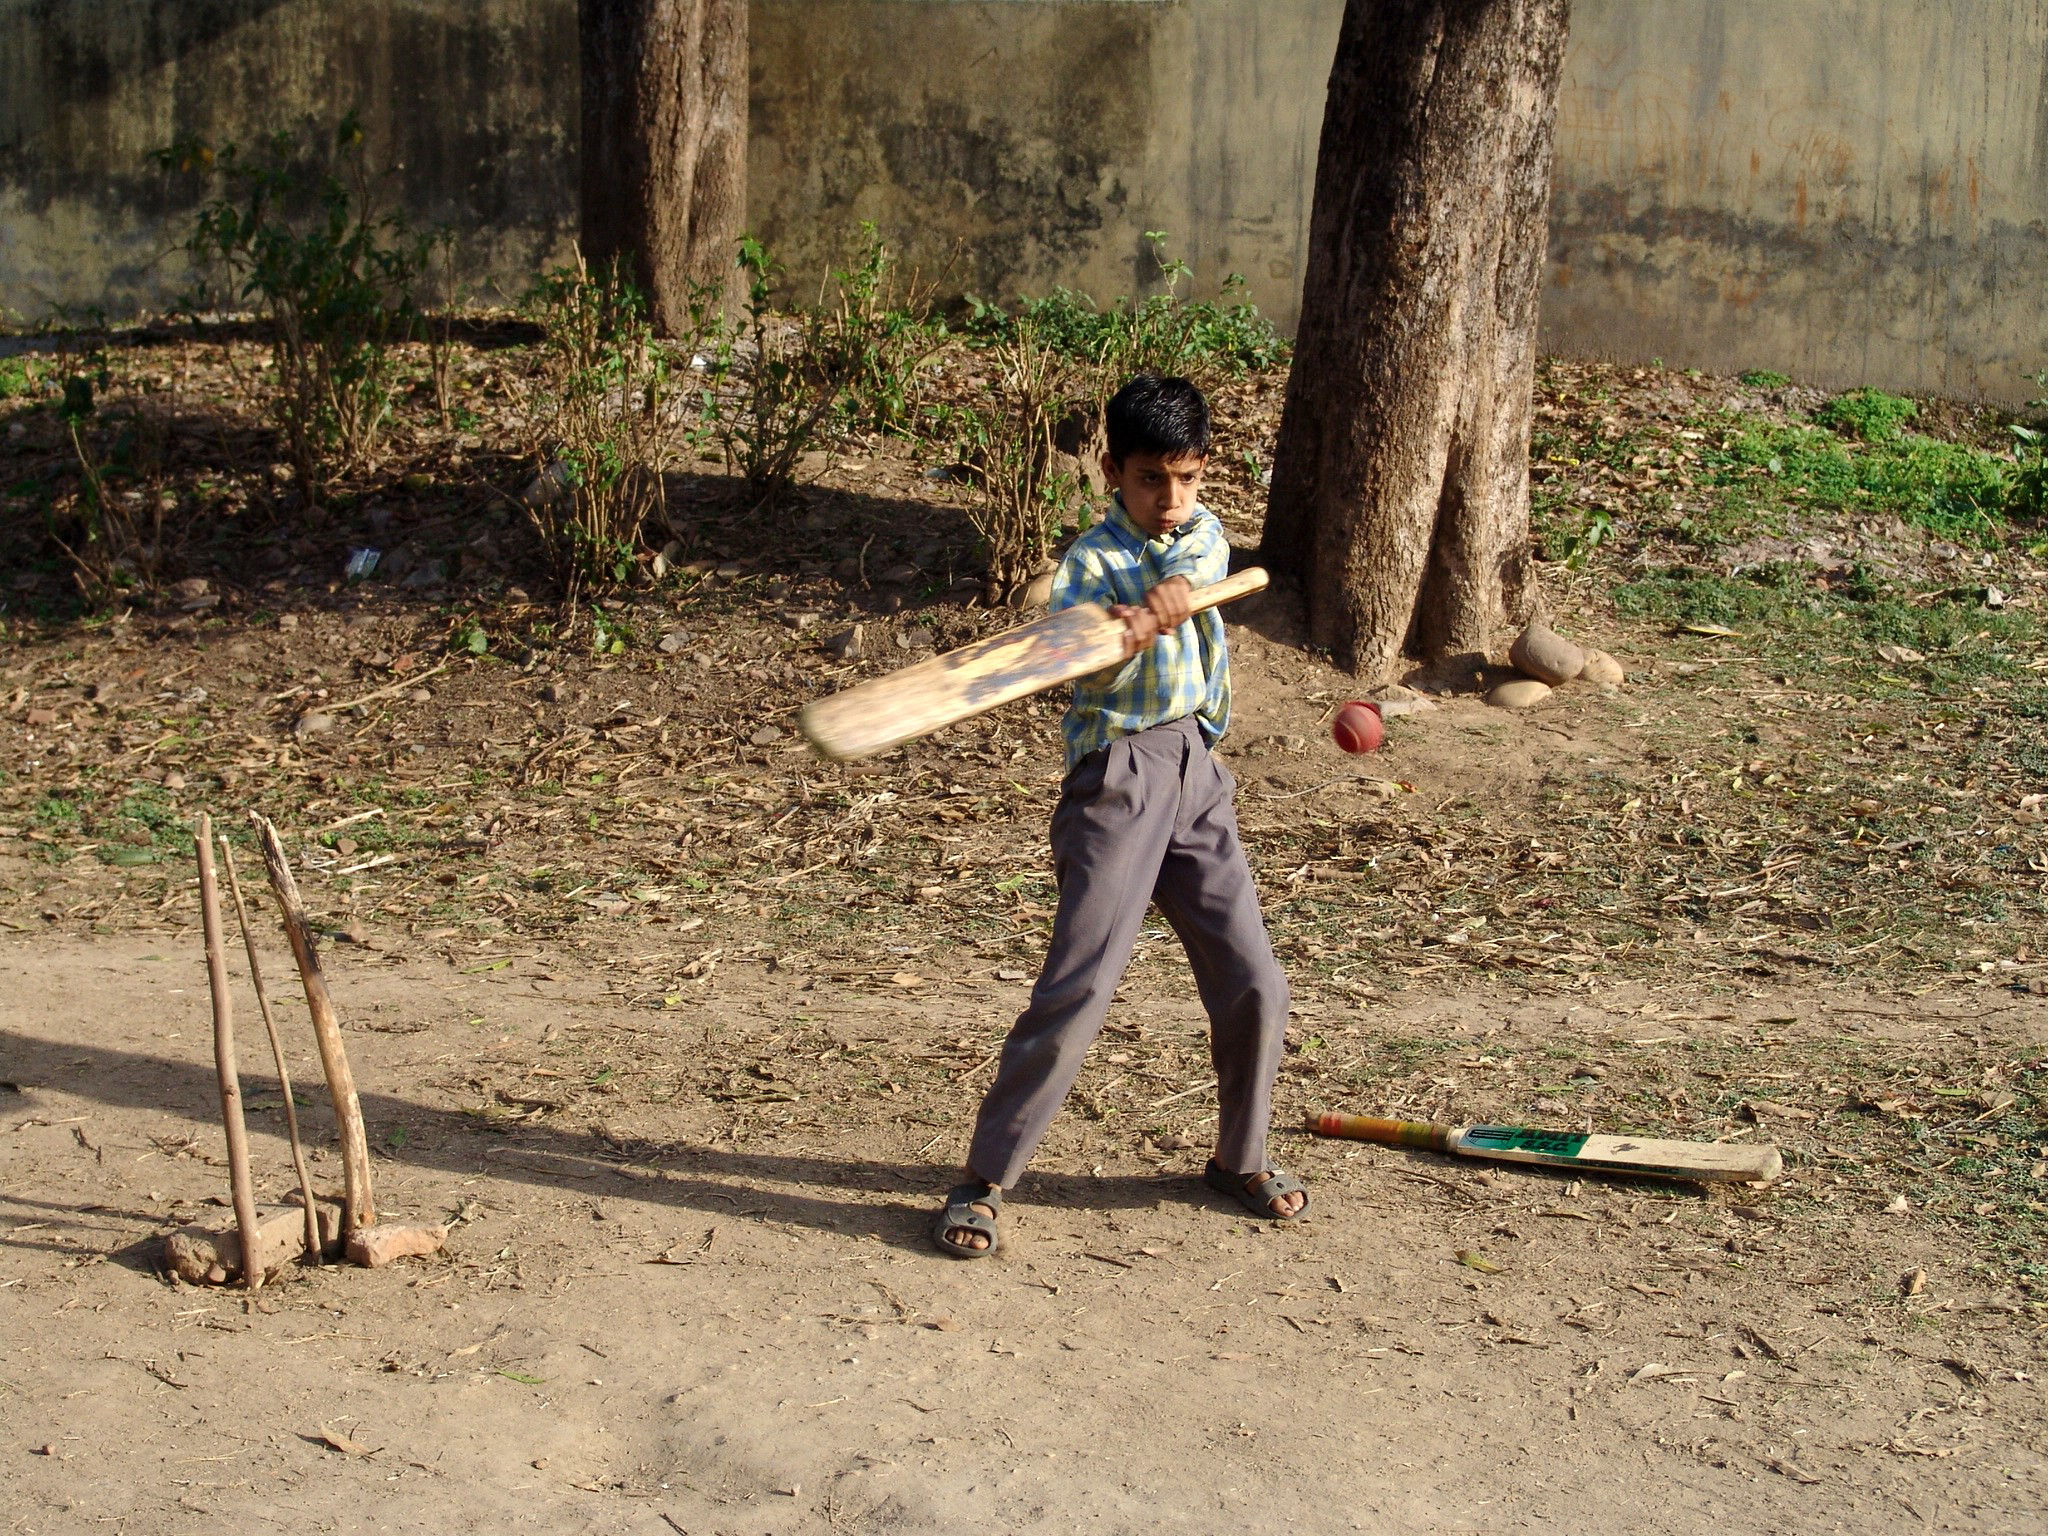  Himachal Pradesh, cricket